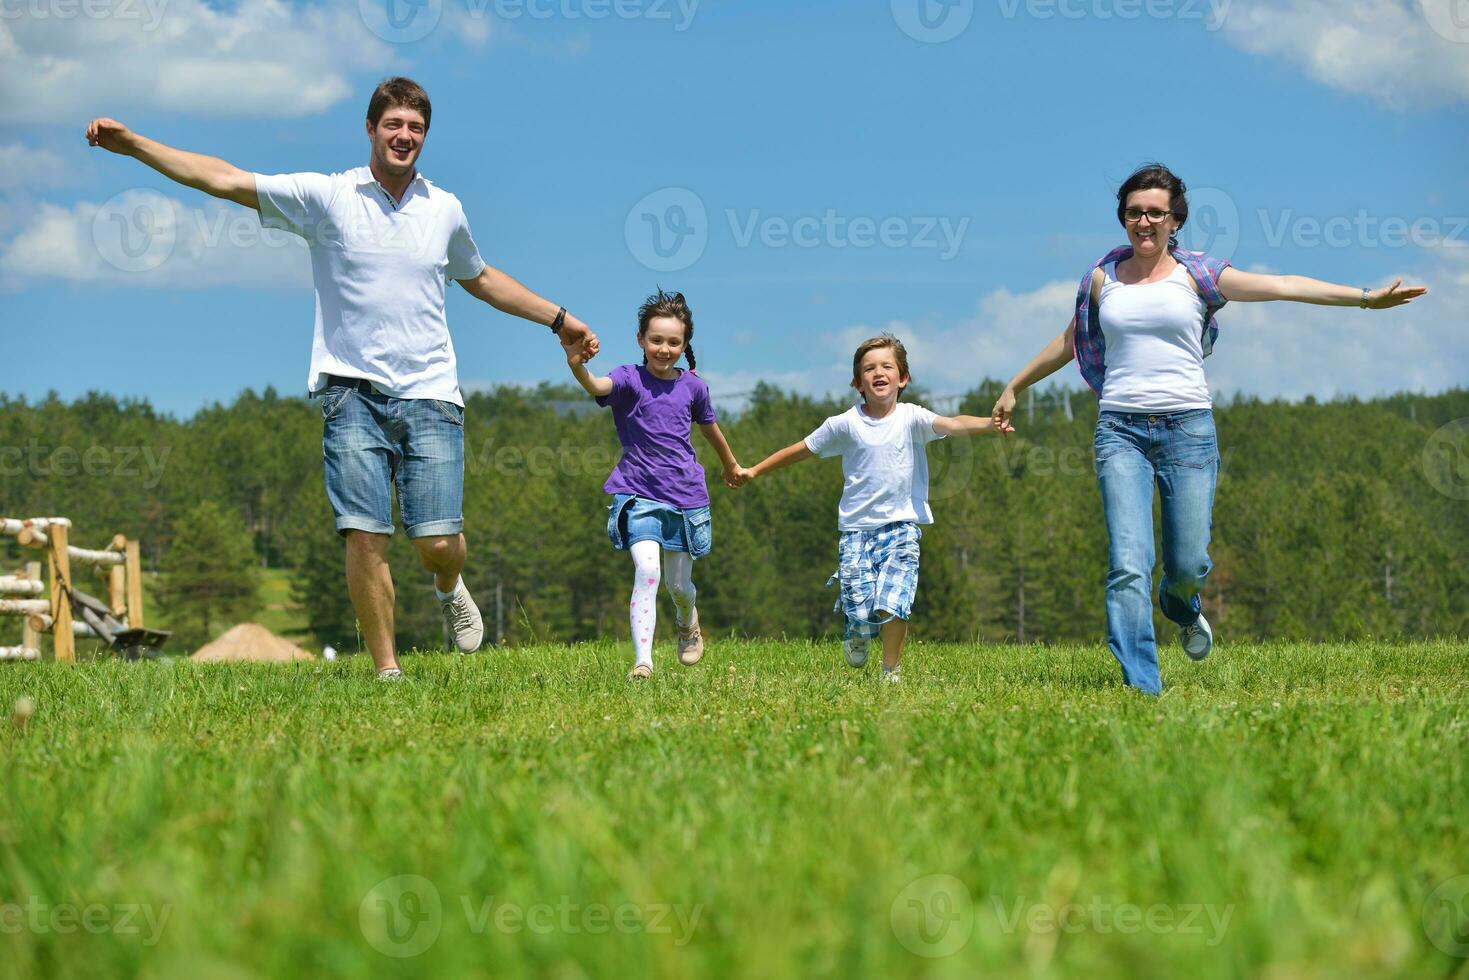 familia joven feliz divertirse al aire libre foto